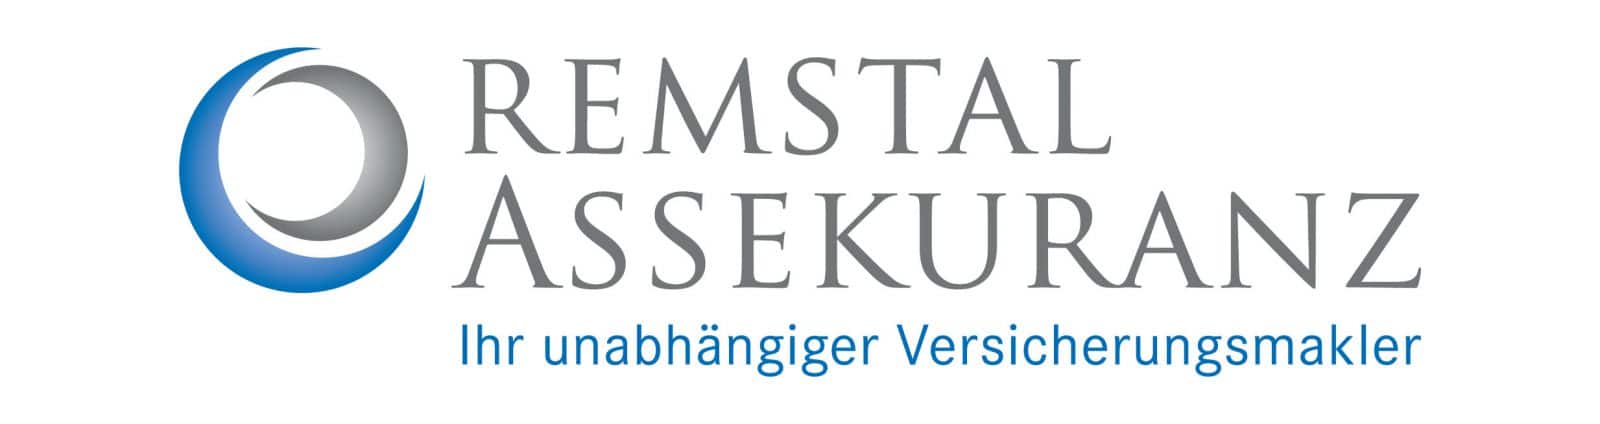 Remstal Assekuranz Logo